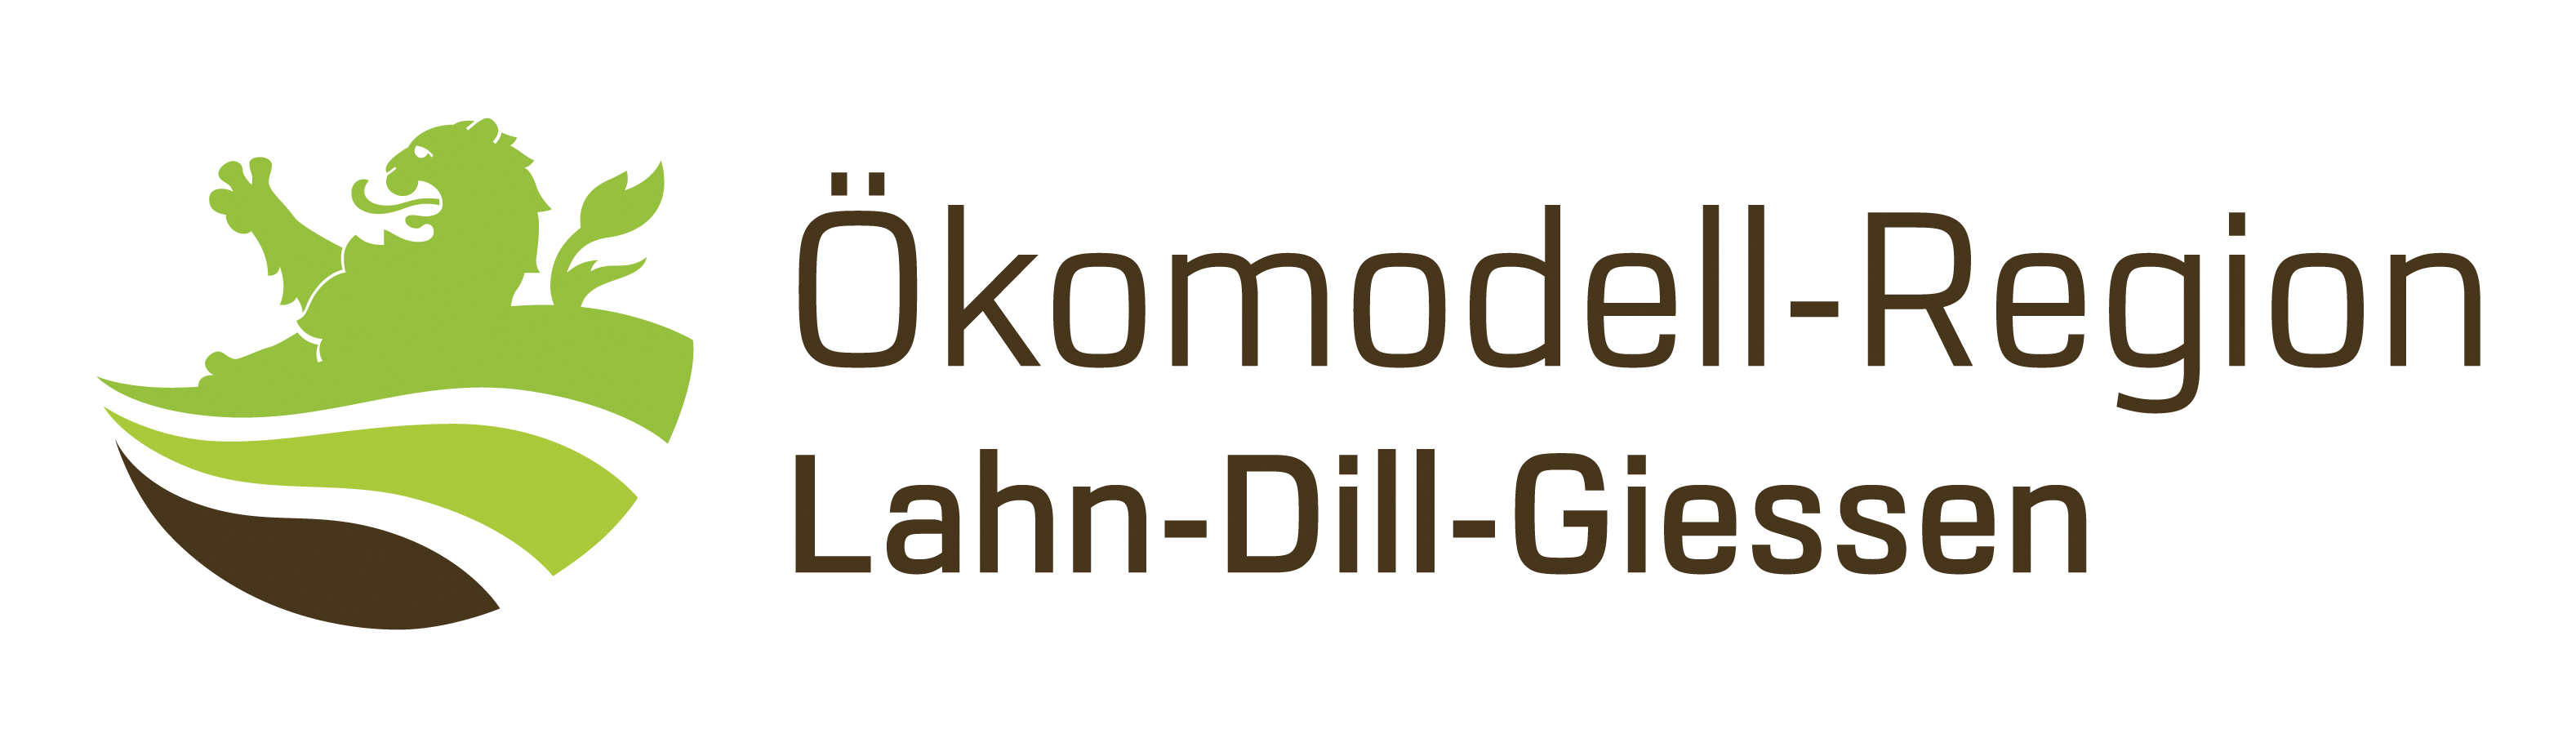 Logo der Ökomodell-Region Lahn-Dill-Gießen